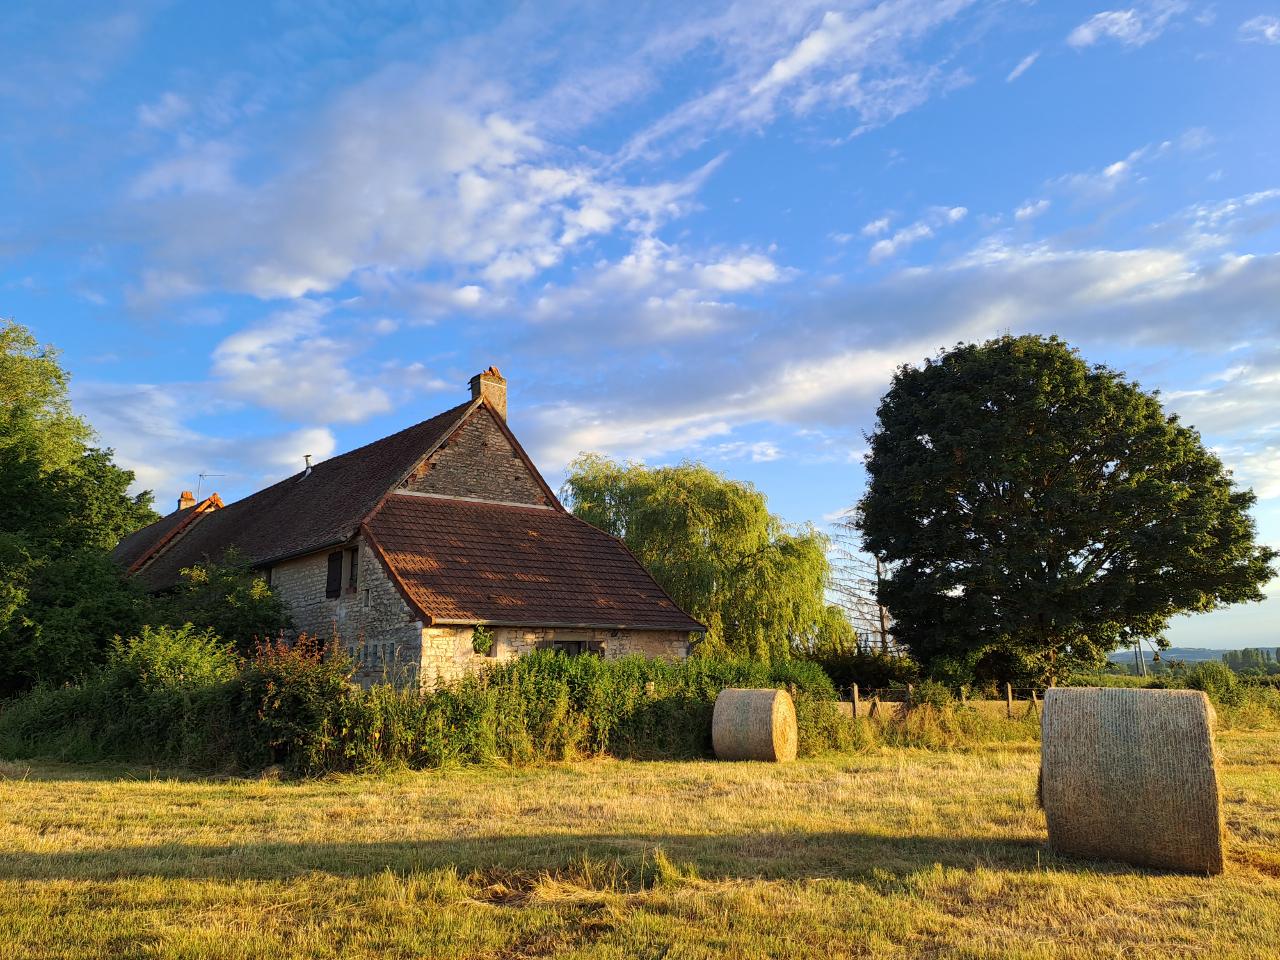 Hôte GreenGo: Gîte de campagne "La Chavoche" situé en lisière de bois et à proximité d’une rivière - Bourgogne - Image 24